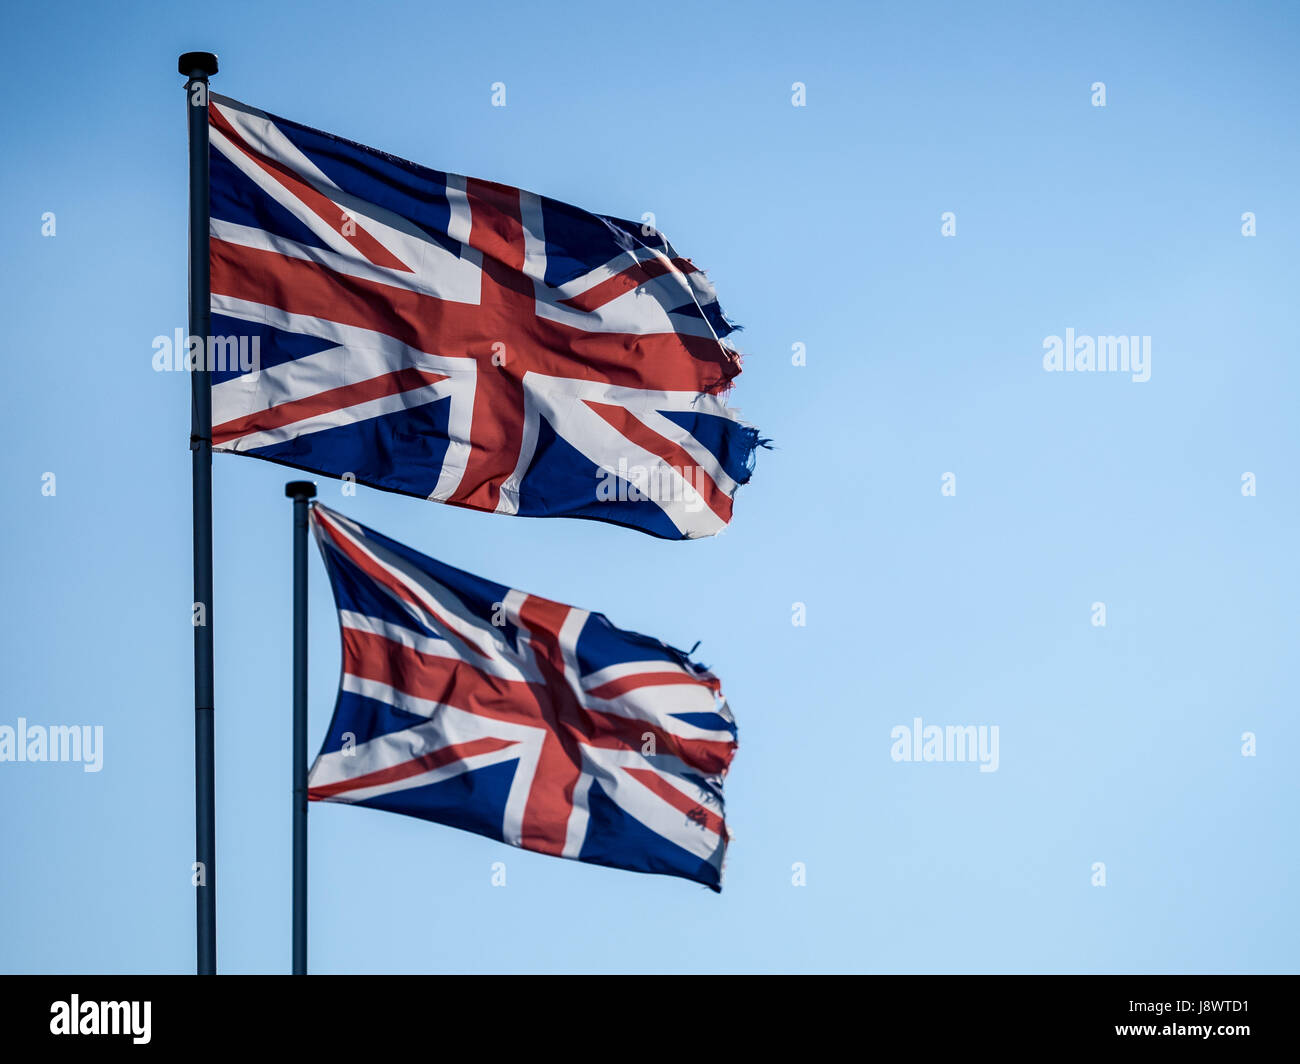 Deux drapeaux Union Jack, rétroéclairé against a blue sky Banque D'Images